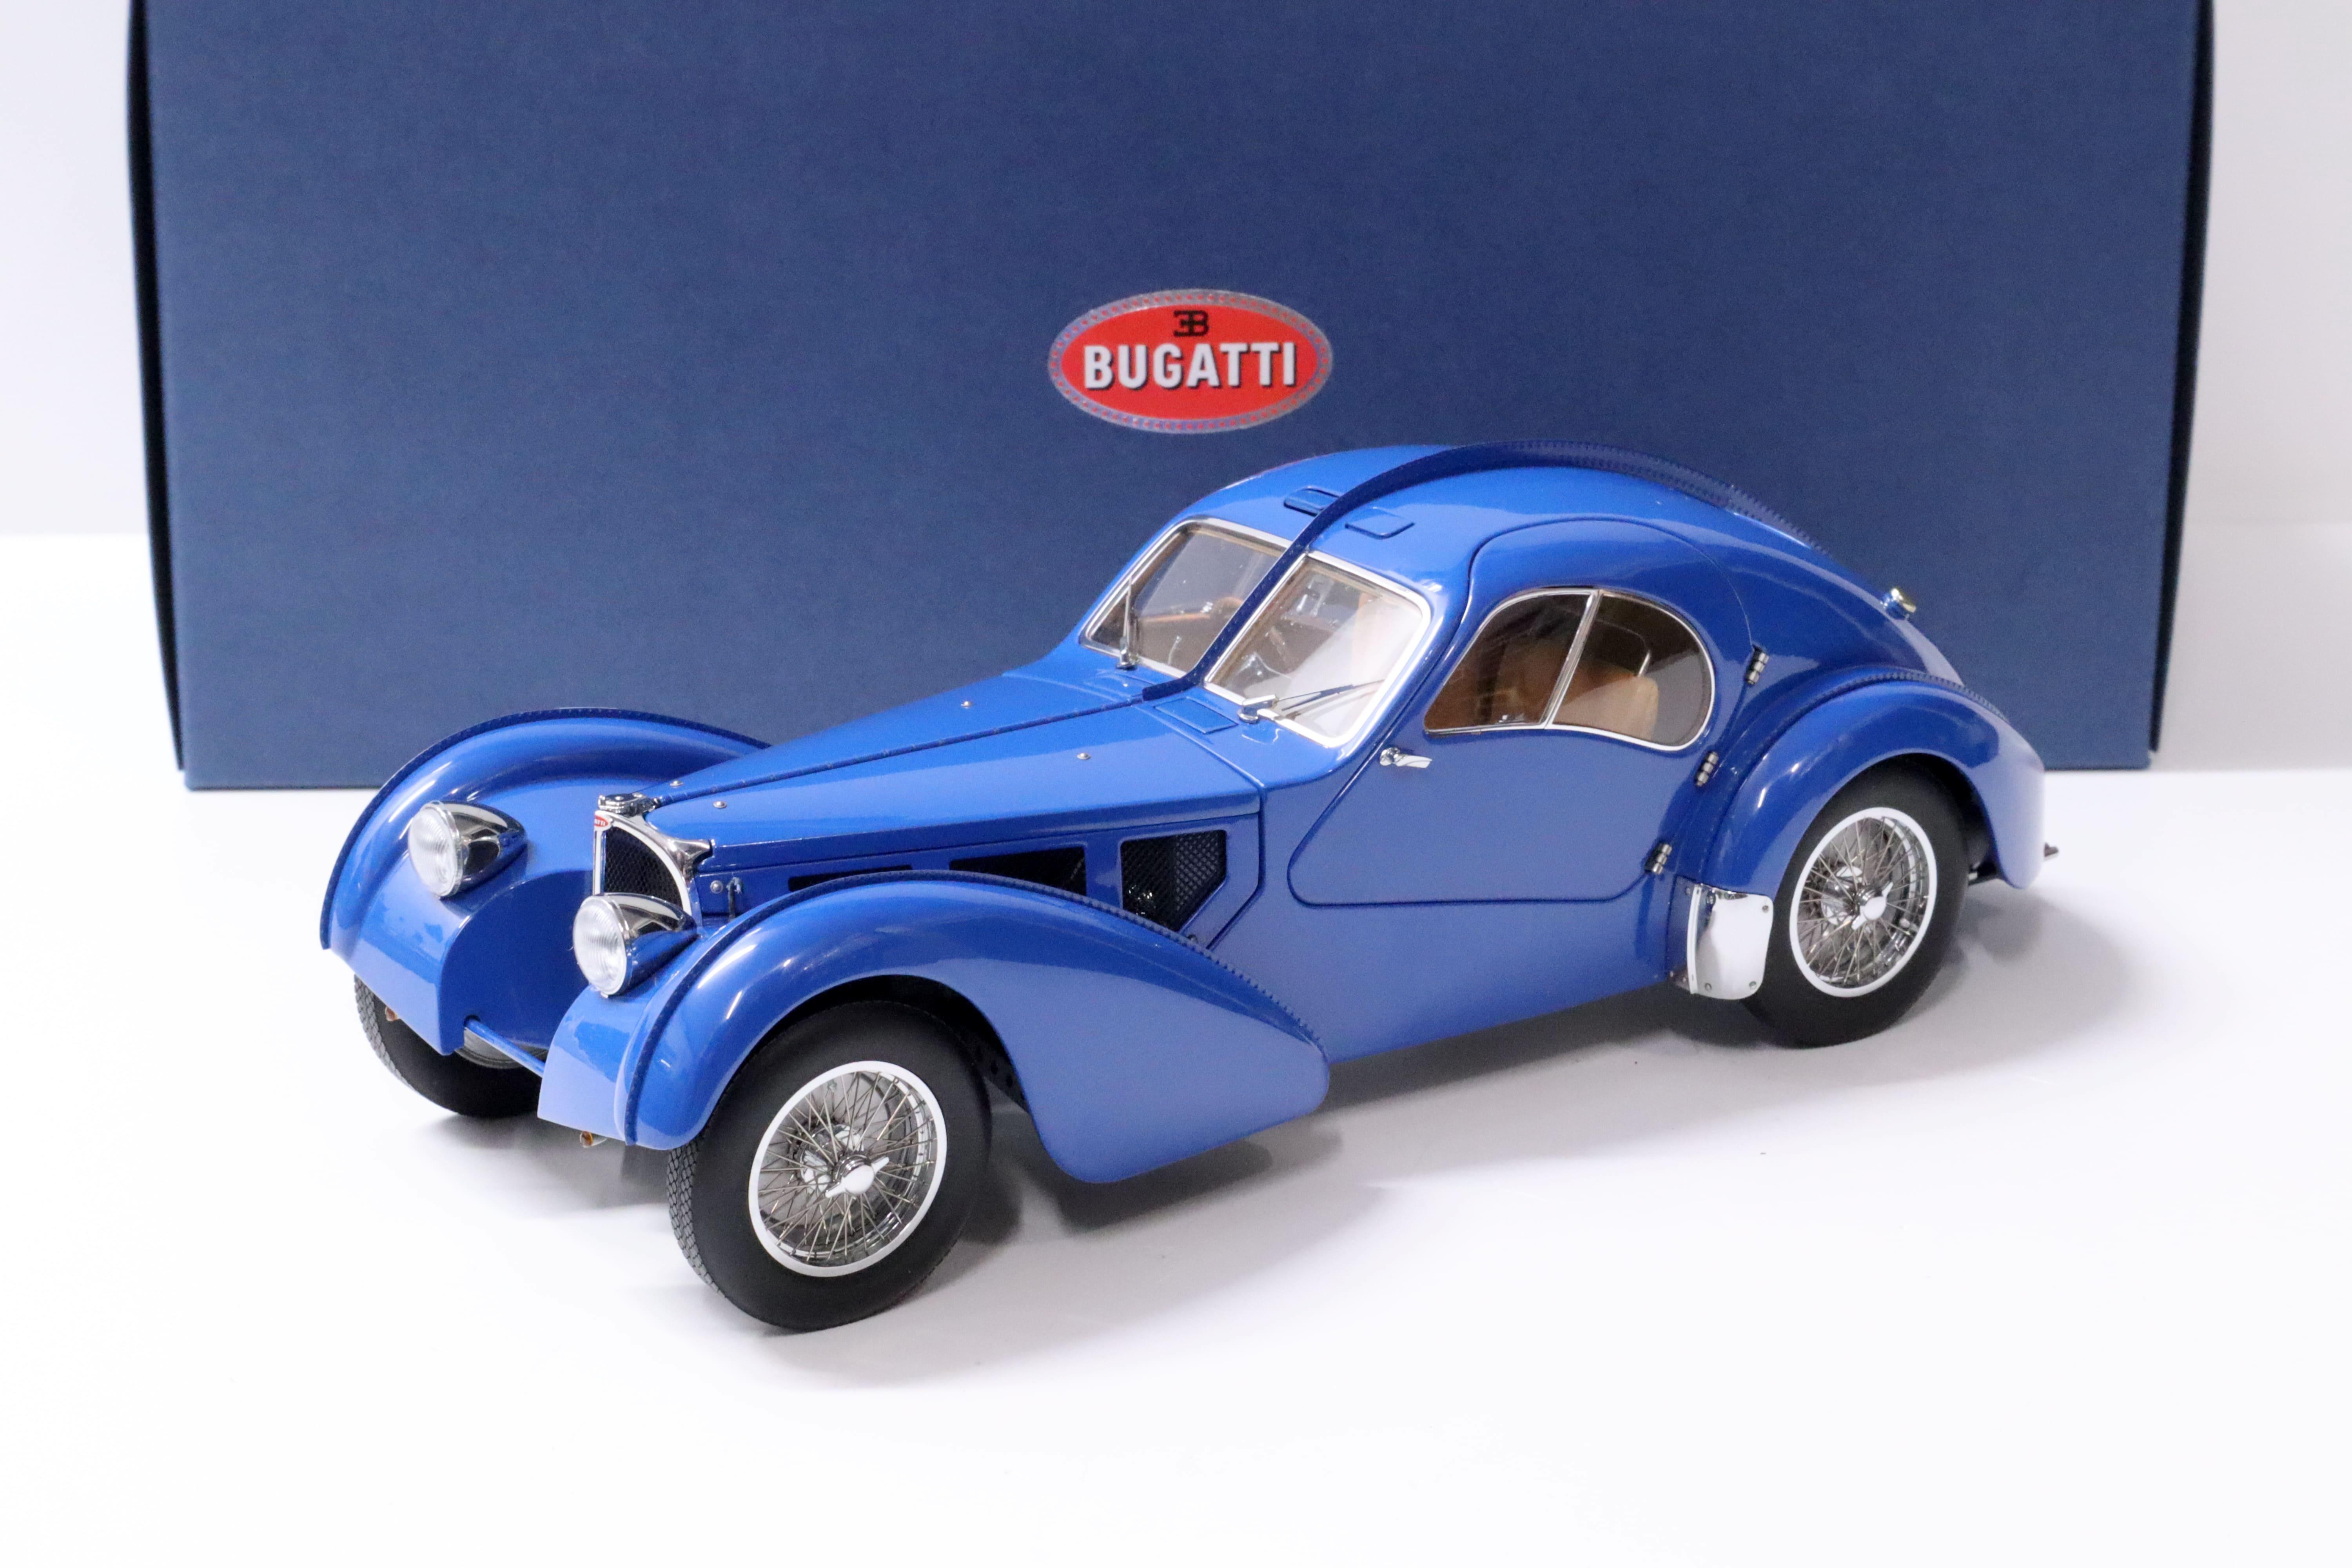 1:18 AUTOart Bugatti 57S Atlantic 1938 blue/ with metal wire spoke wheels